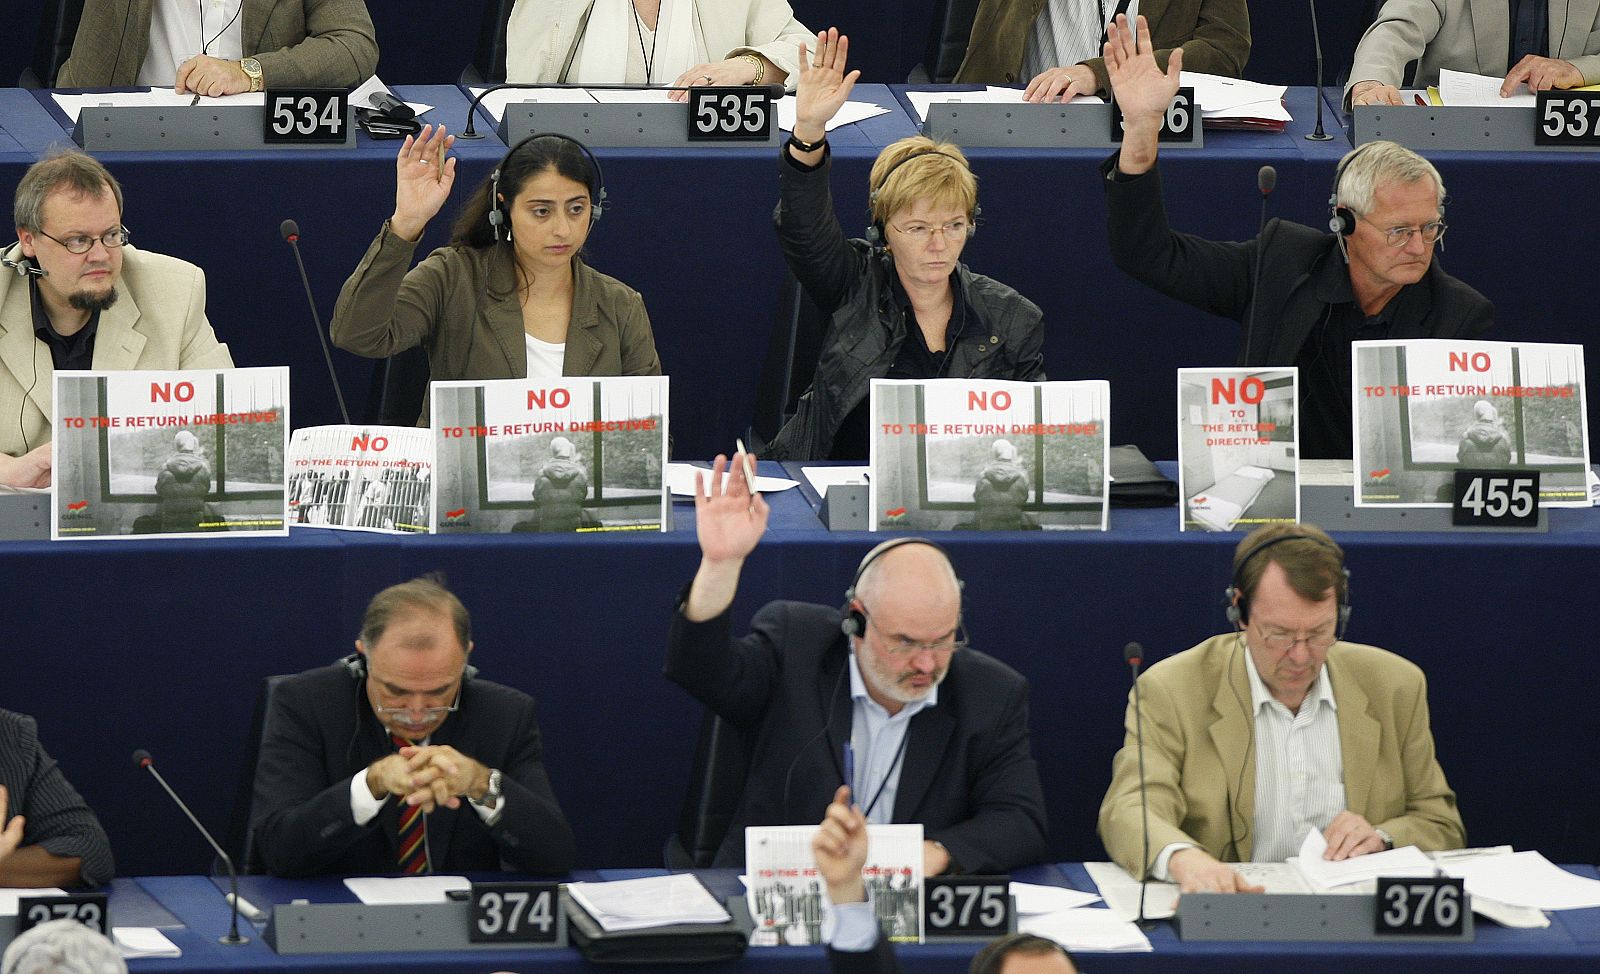 Eurodiputados de la Izquierda Unitaria Europea llevan carteles contrarios a la directiva de retorno durante la votación en el Parlamento Europeo.